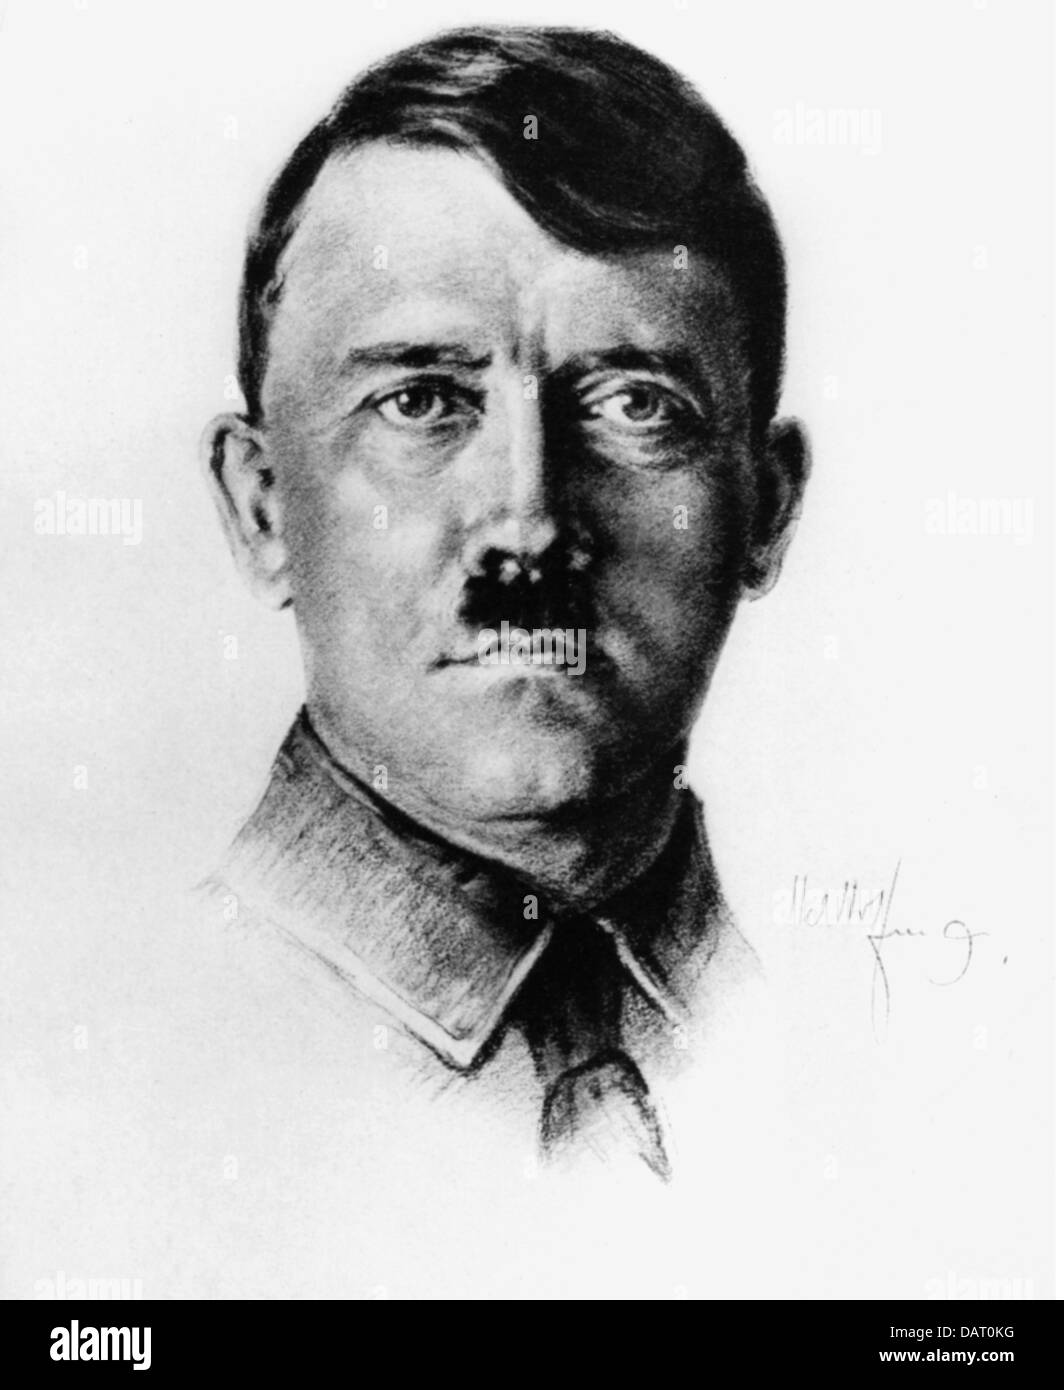 Hitler, Adolf, 20.4.1889 - 30.4.1945, deutscher Politiker (NSDAP), Reichskanzler 30.1.1933 - 30.4.1945, Porträt mit Unterschrift, Zeichnung, 1930er Jahre, Stockfoto